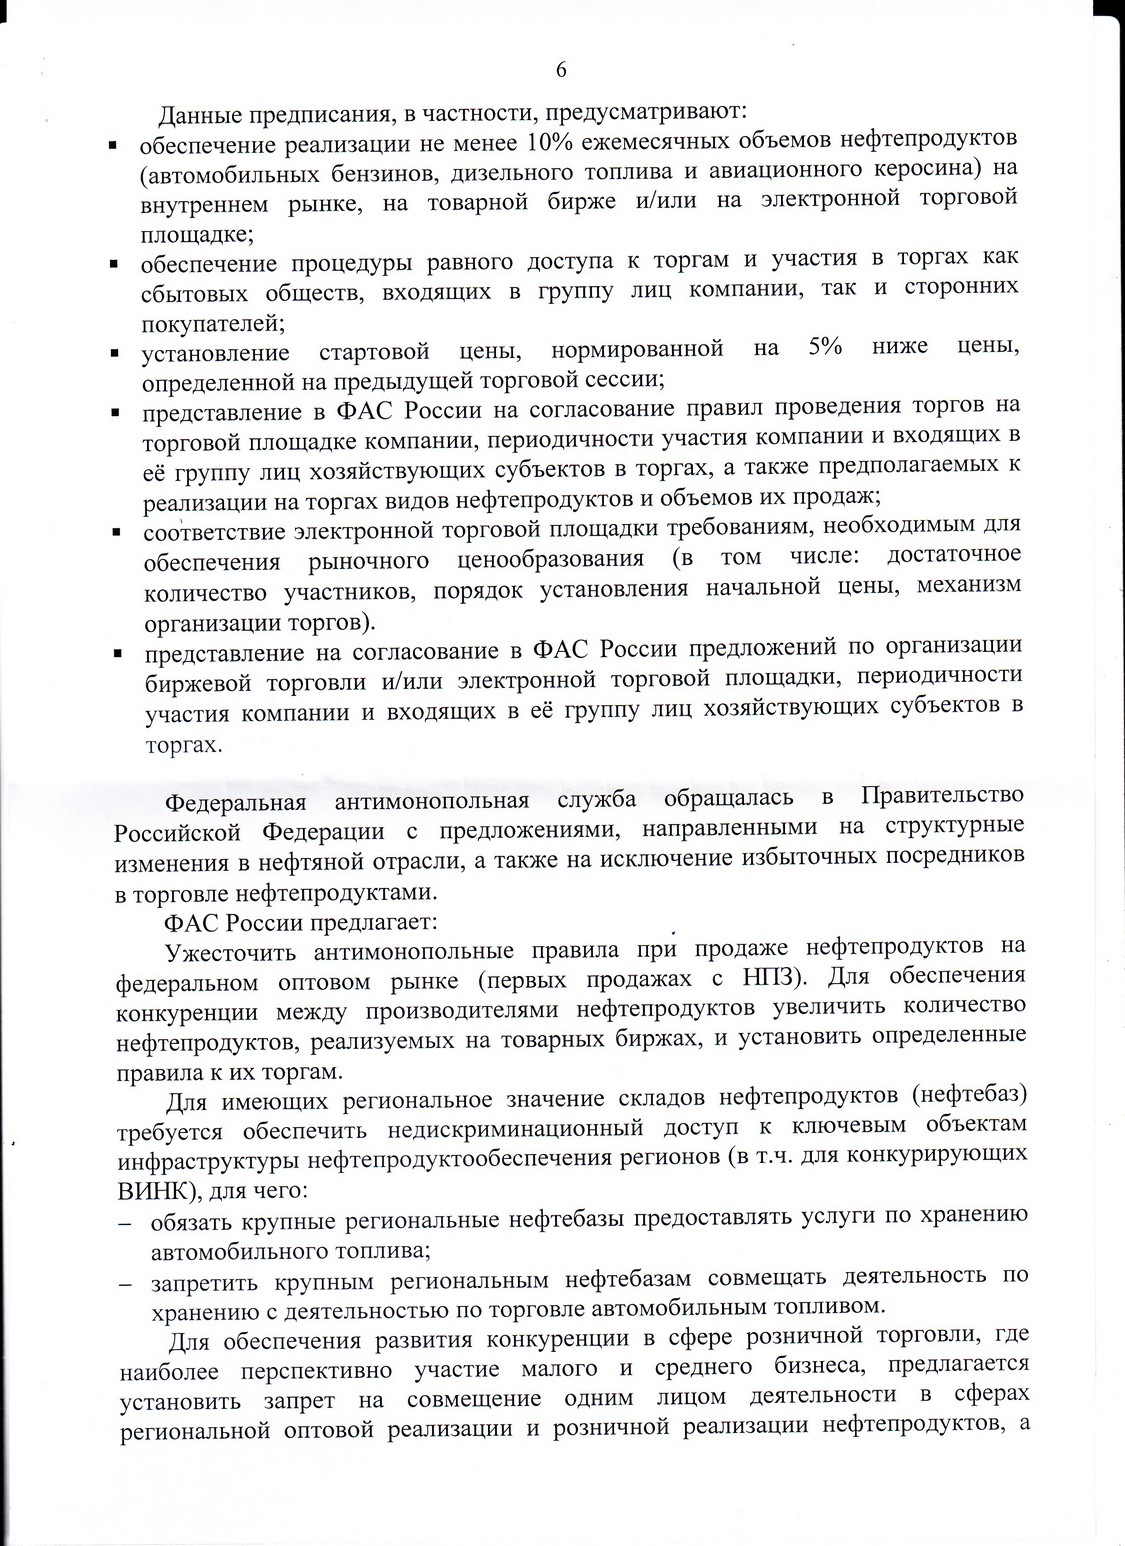 Ответ ФАС Росии на наше обращение по поводу резкого повышения цен на ДТ. страница 6